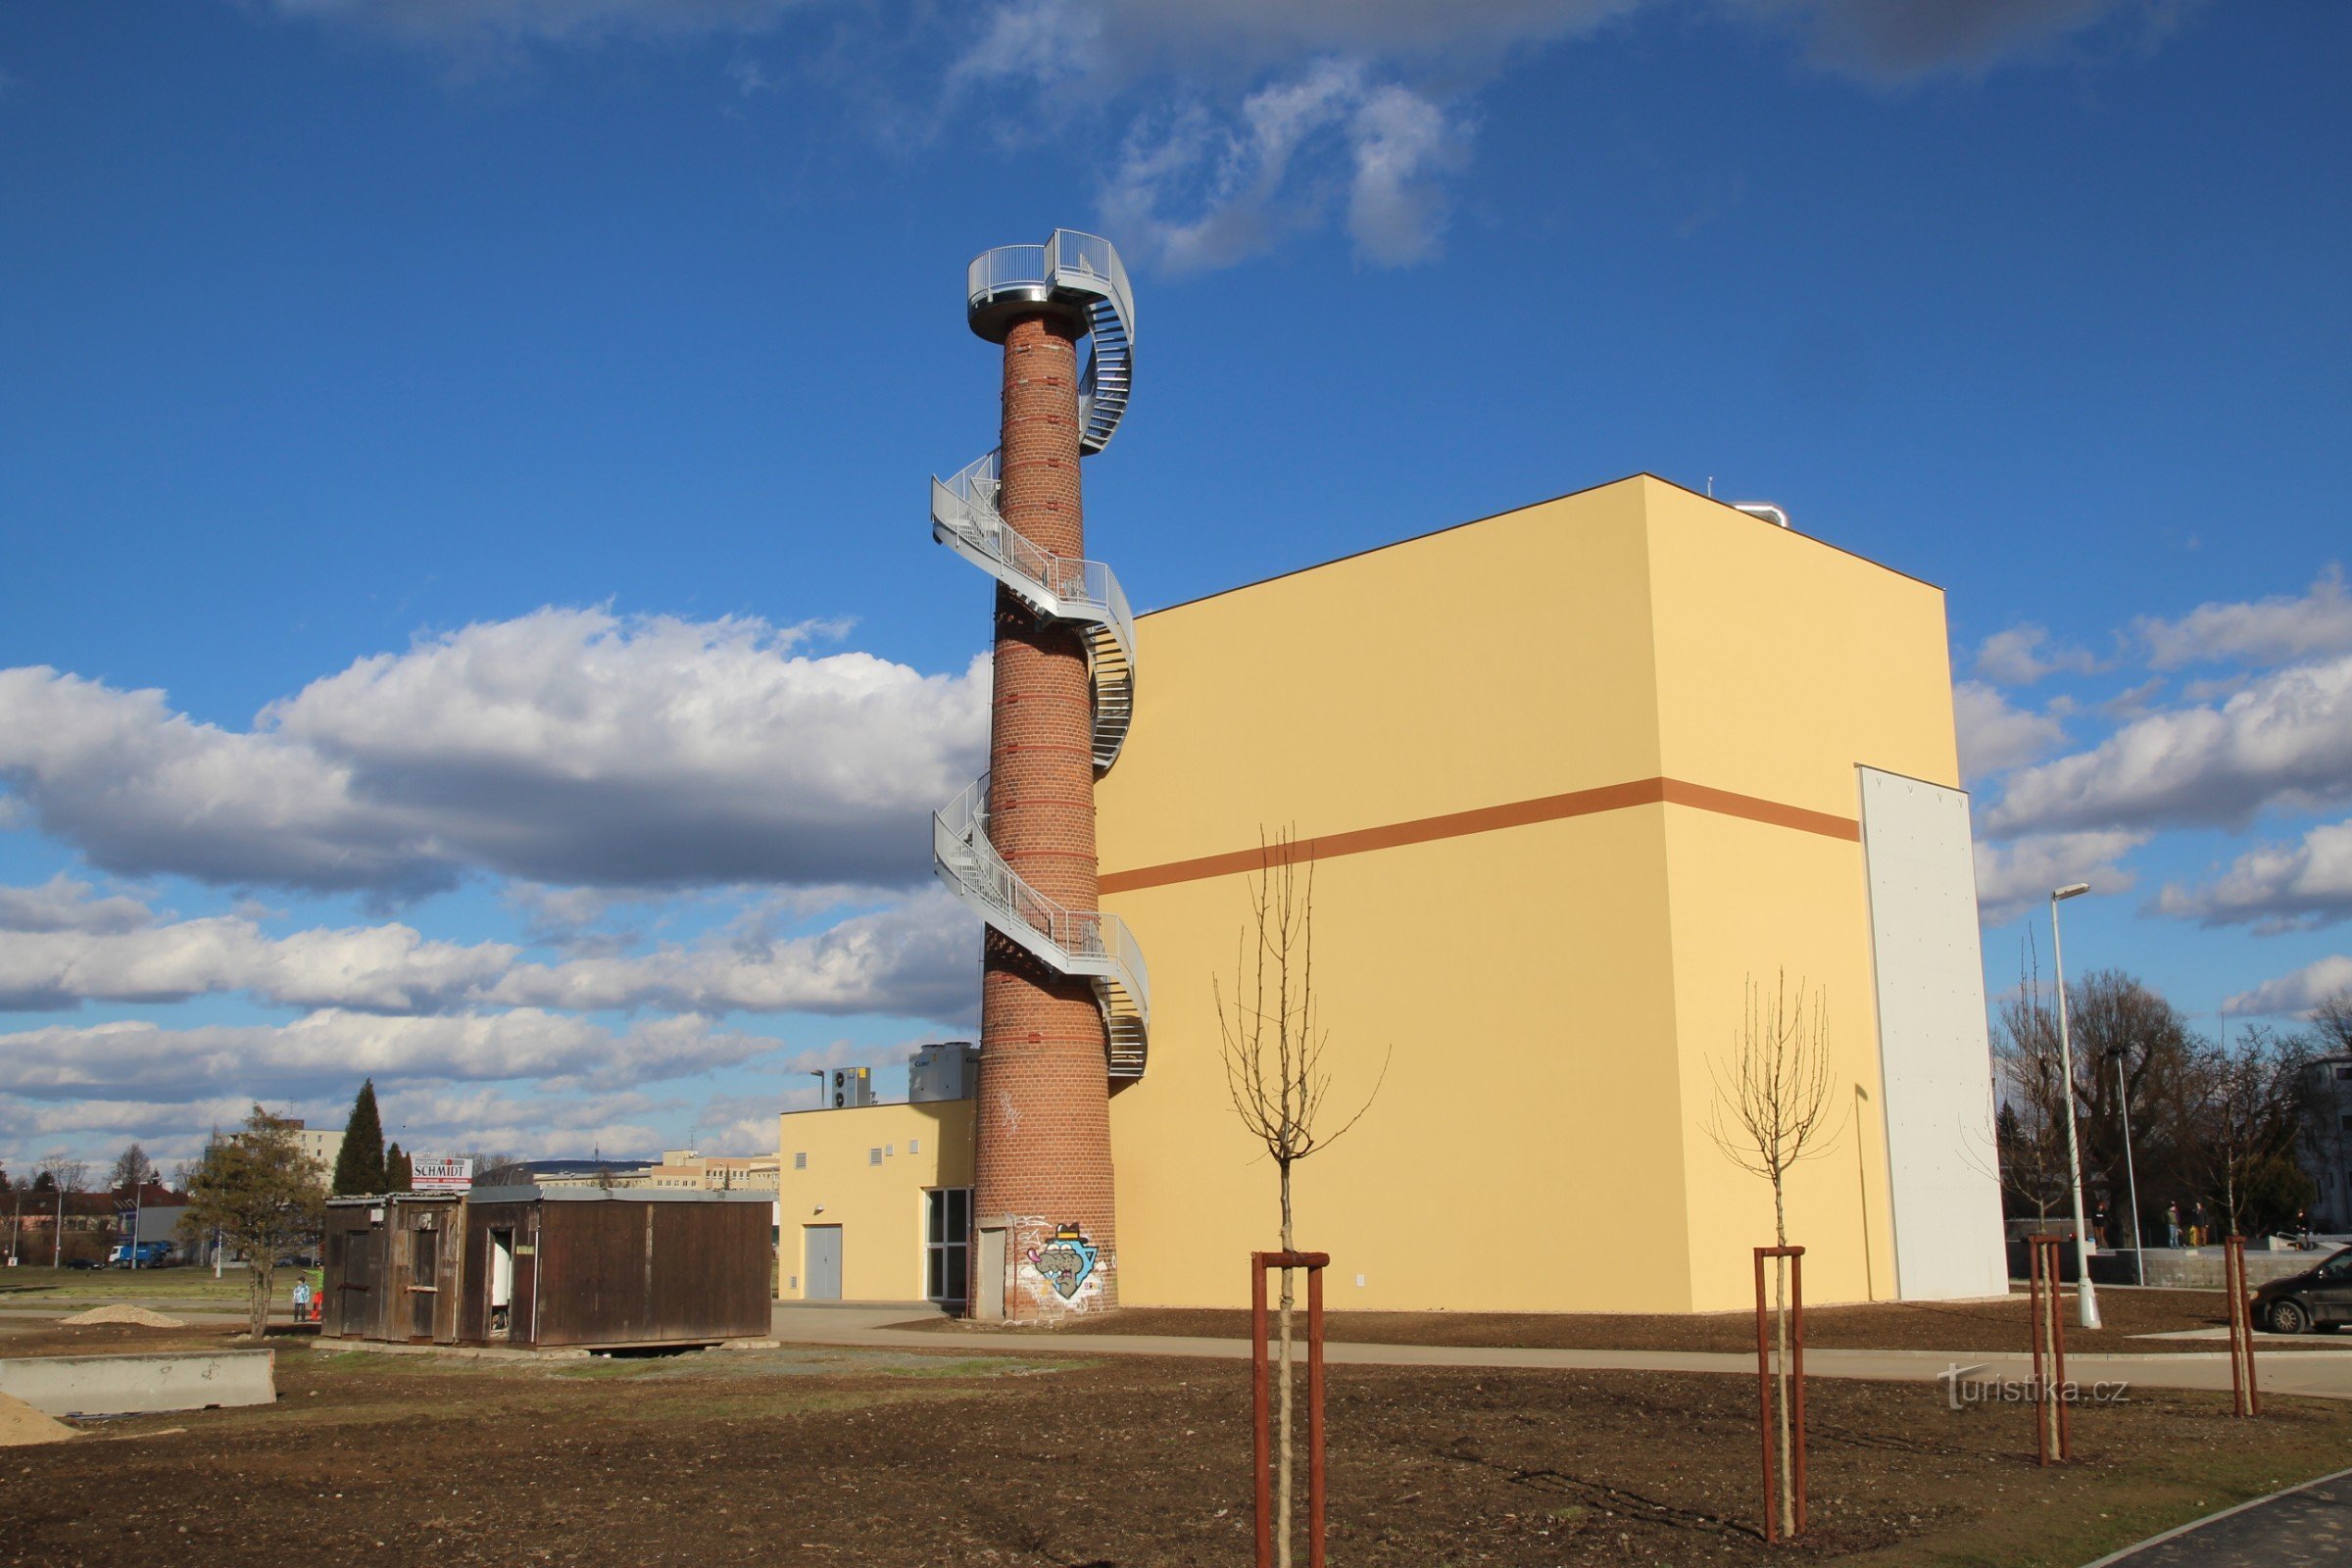 Obiectul turnului de observație - primăvara 2014